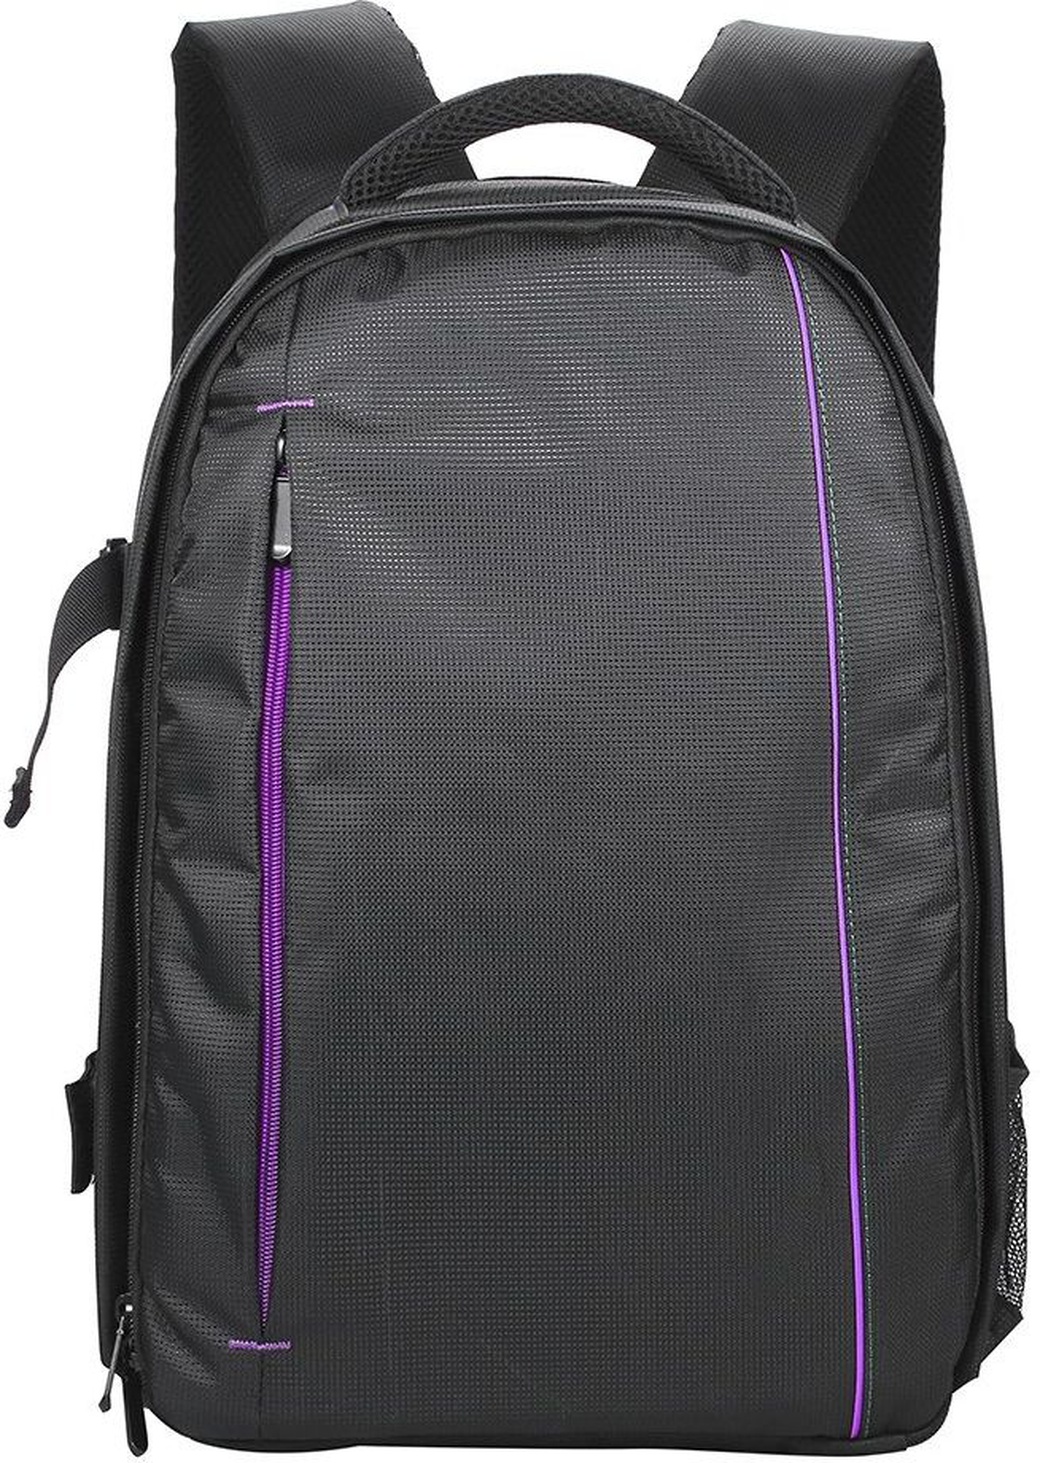 Рюкзак для фотокамеры износостойкий, фиолетовый фото